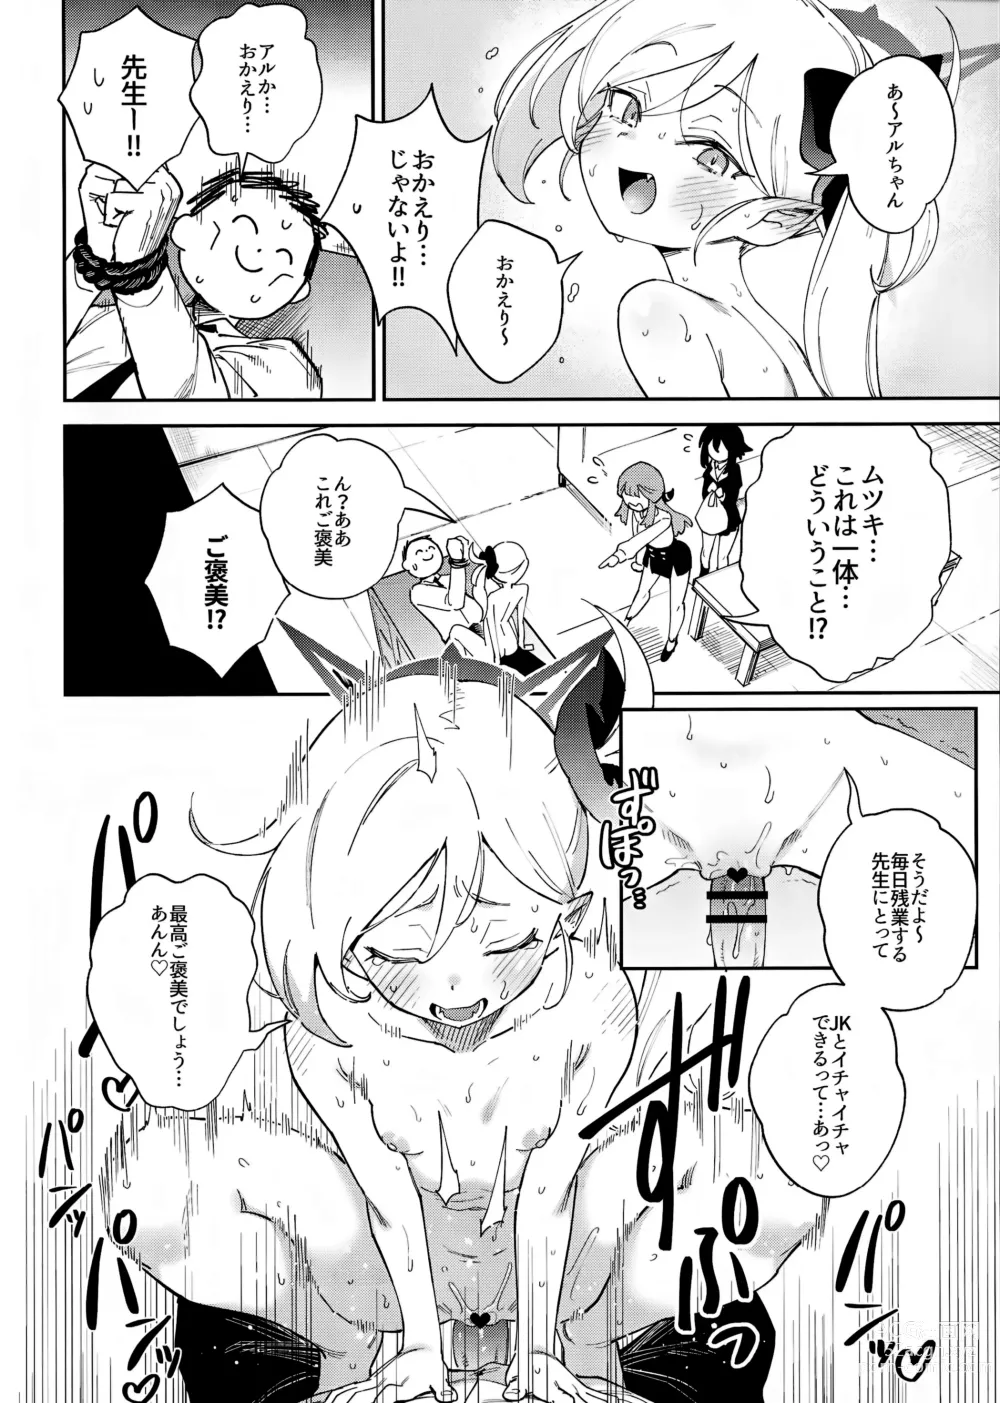 Page 4 of doujinshi Sensei to Seito no Kankei tte Konna ni mo Open nanoo!?